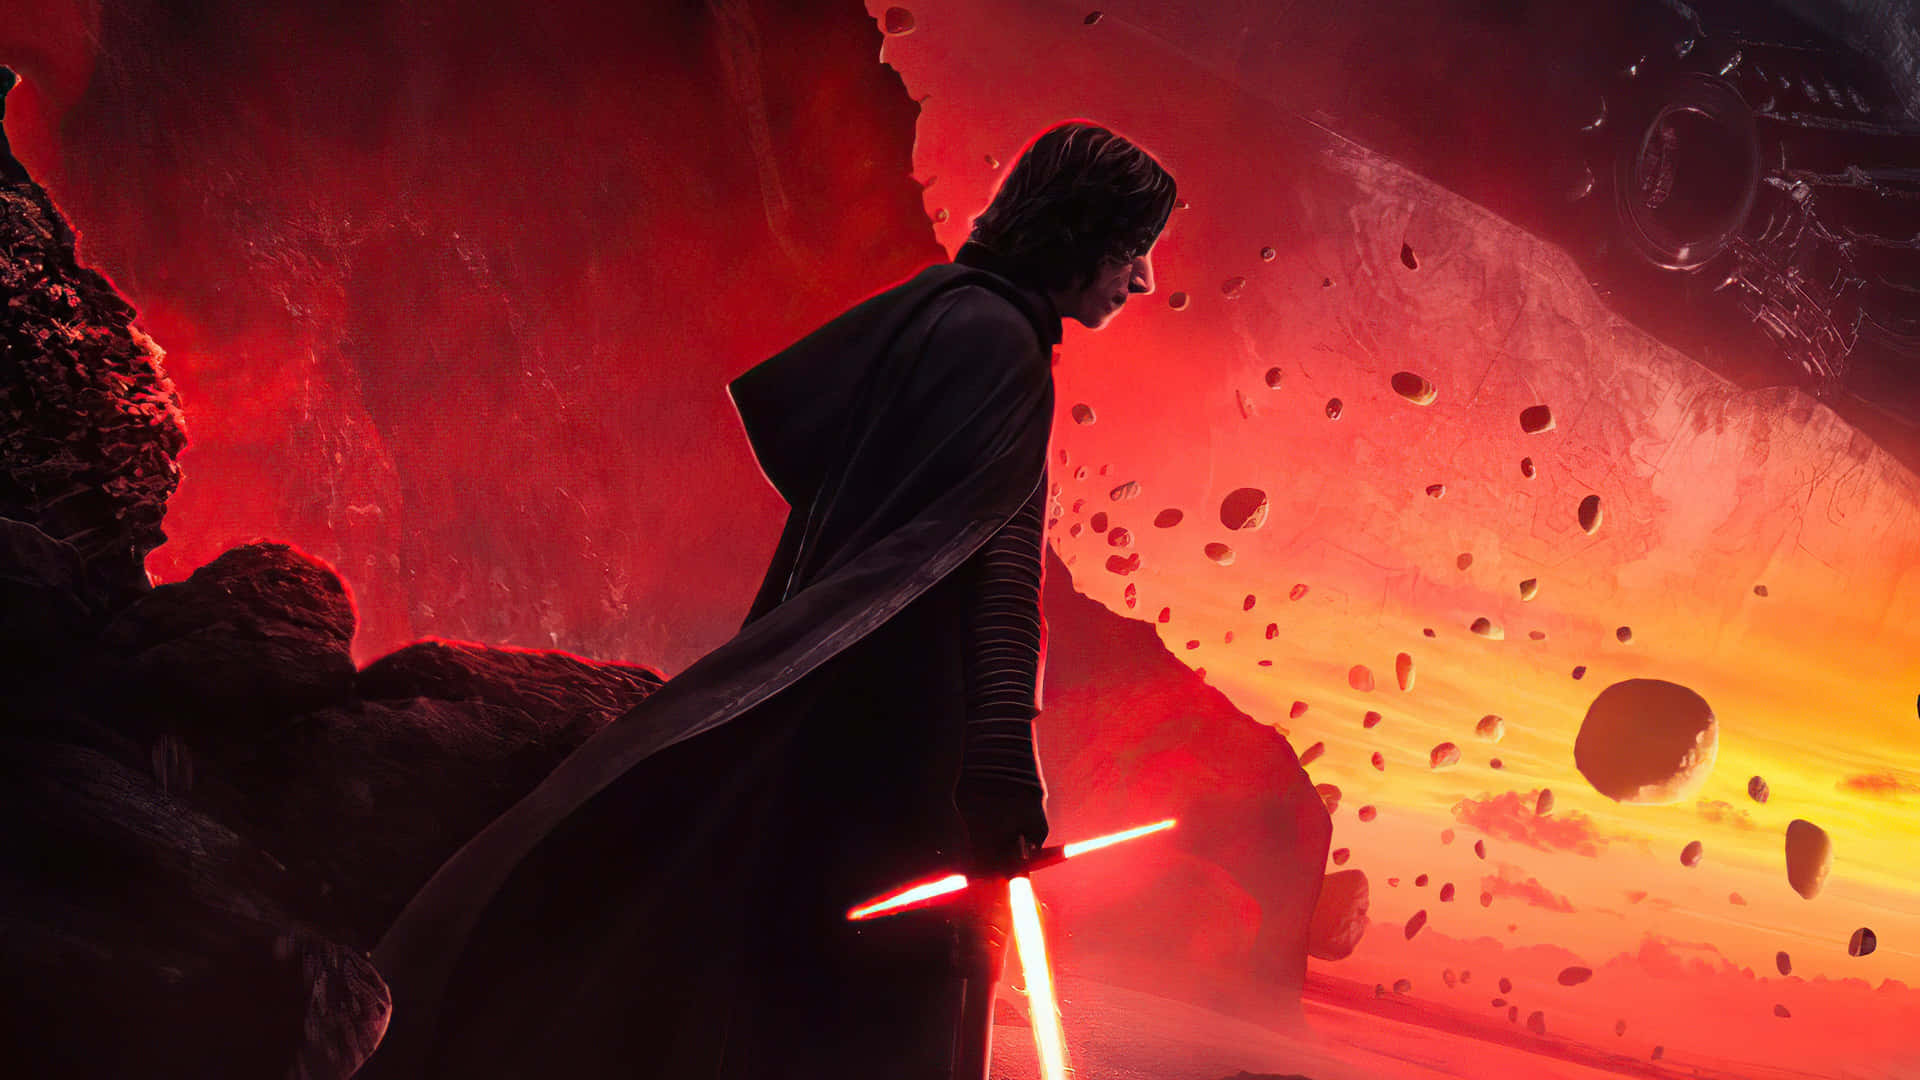 Den mørke figur af Kylo Ren i Star Wars: The Last Jedi. Wallpaper